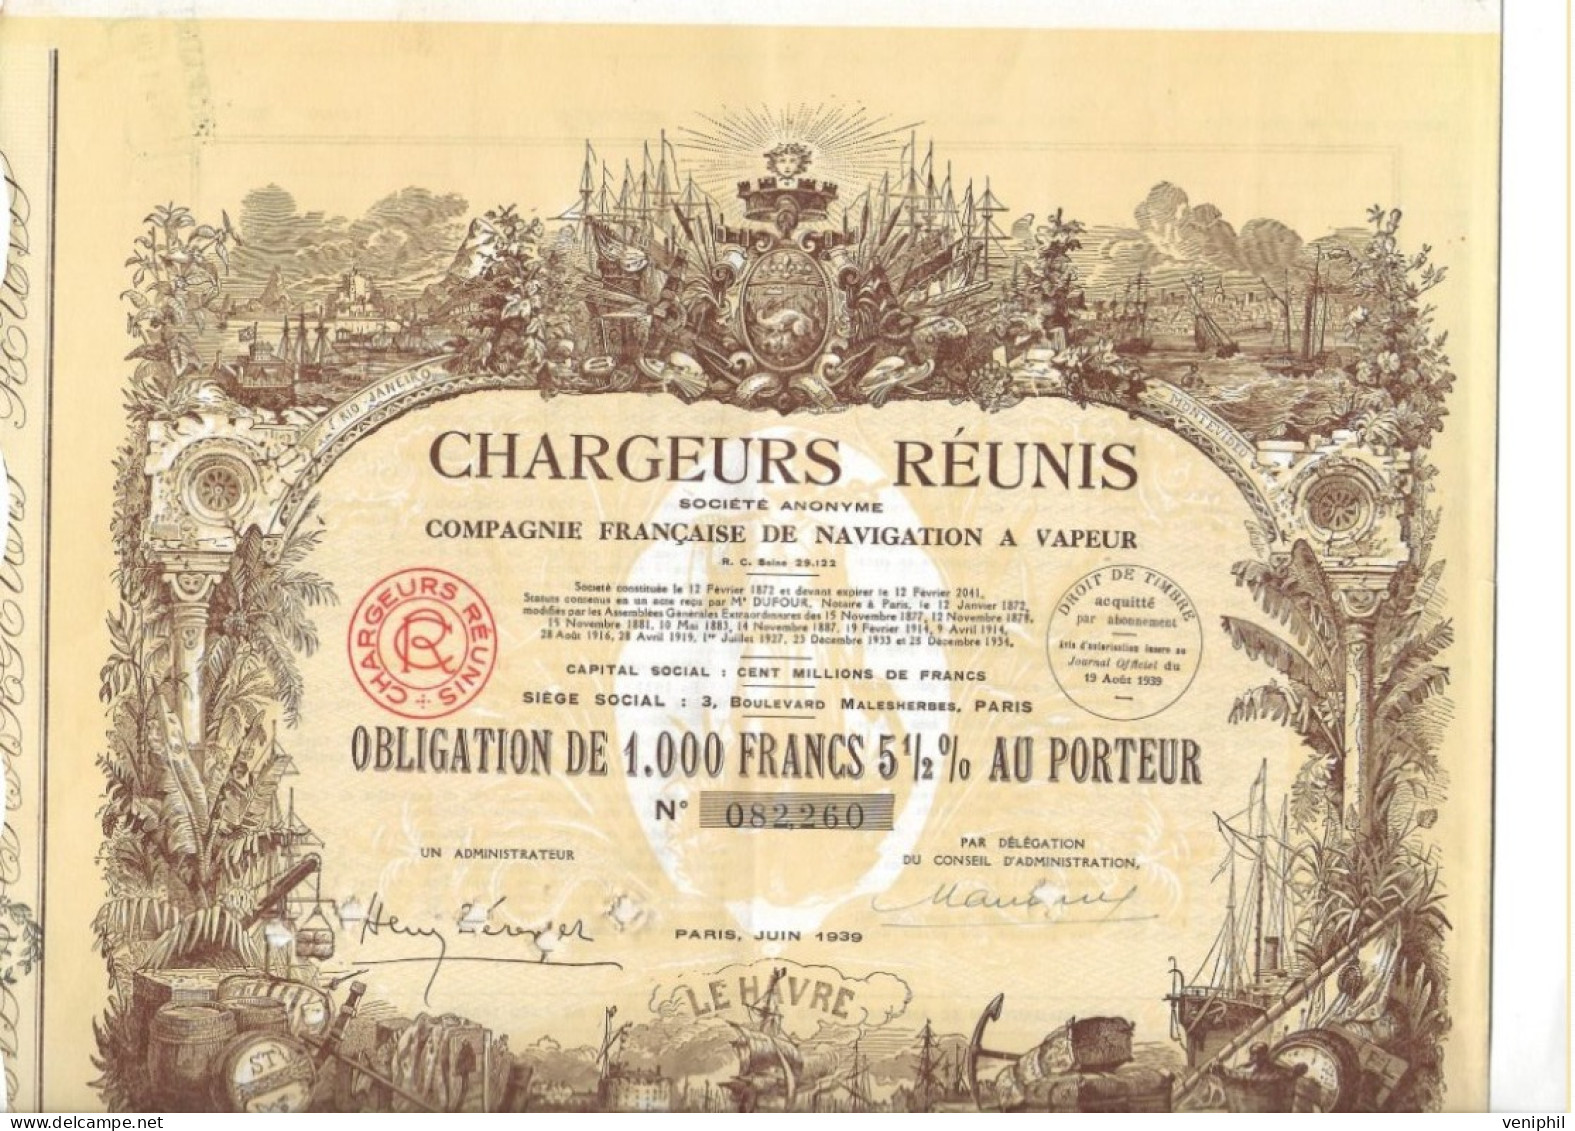 CHARGEURS REUNIS - COMPAGNIE FRANCAISE DE NAVIGATION A VAPEUR -OBLIGATION DE 1000 FRS- ANNEE 1939 - Schiffahrt